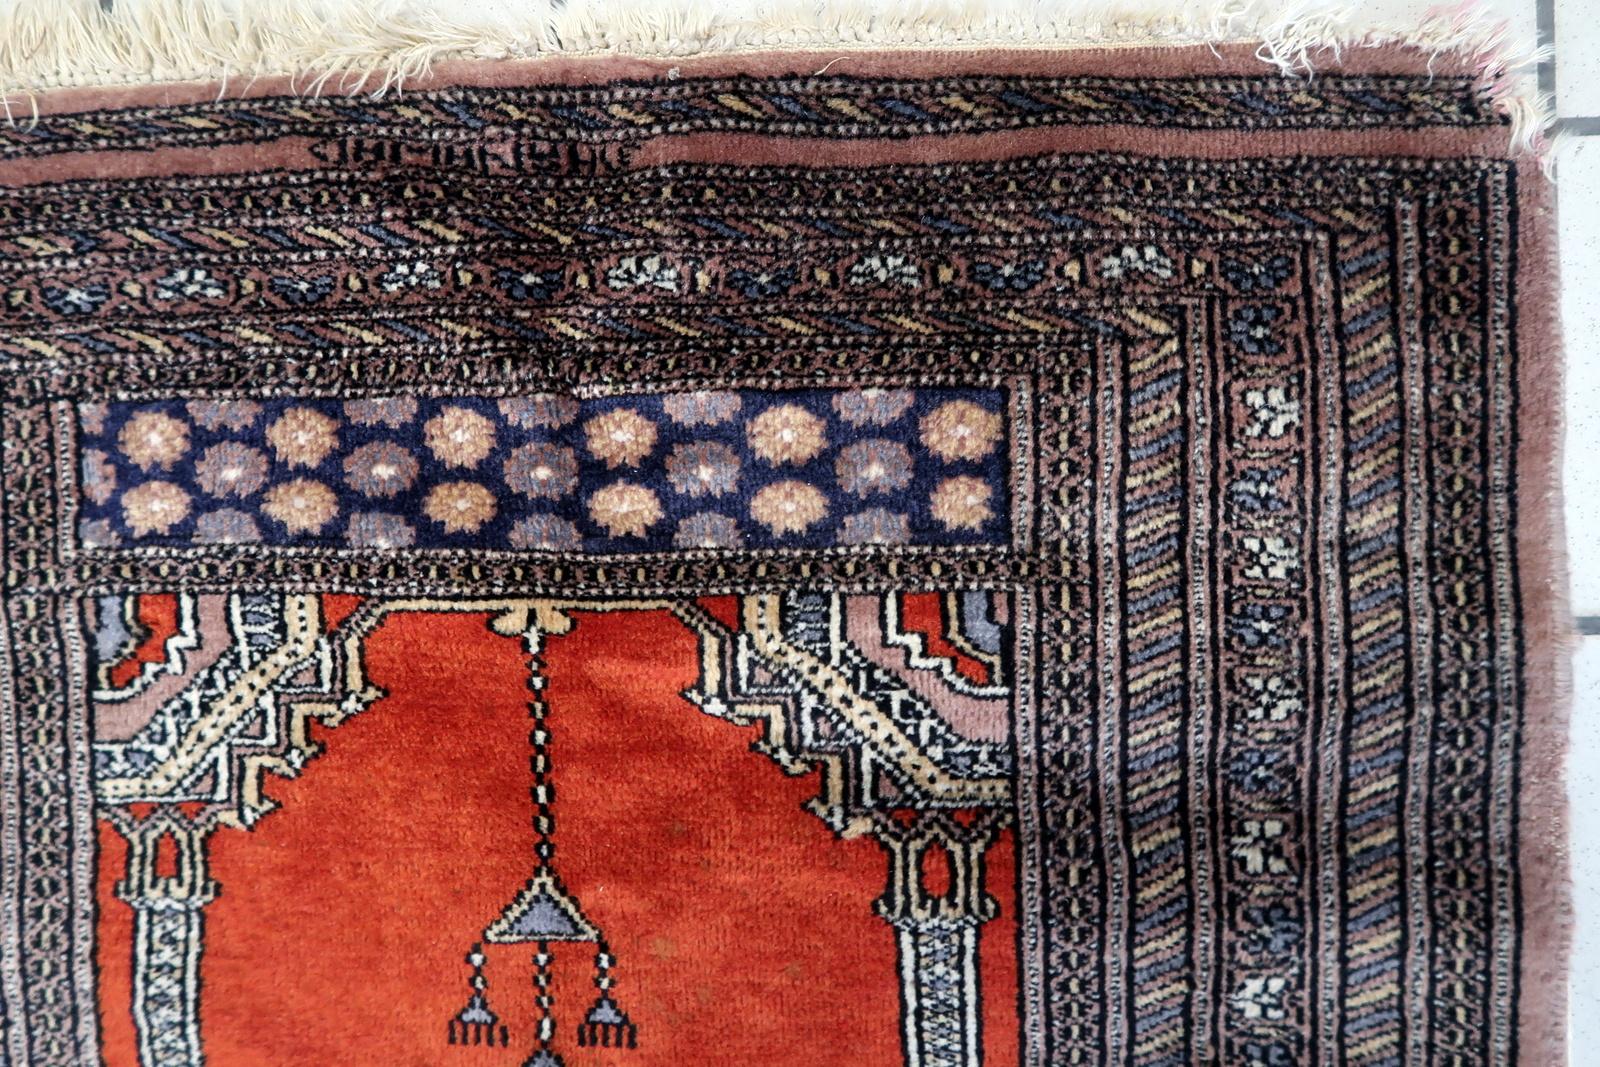 Handgefertigter pakistanischer Vintage Lahore Gebetsteppich aus den 1970er Jahren. Dieses exquisite Stück, das 2,7 mal 3,8 Fuß misst, vermittelt ein Gefühl von Ehrfurcht und Tradition.

Beschreibung des Produkts:
Design/One Patterns:
In der Mitte